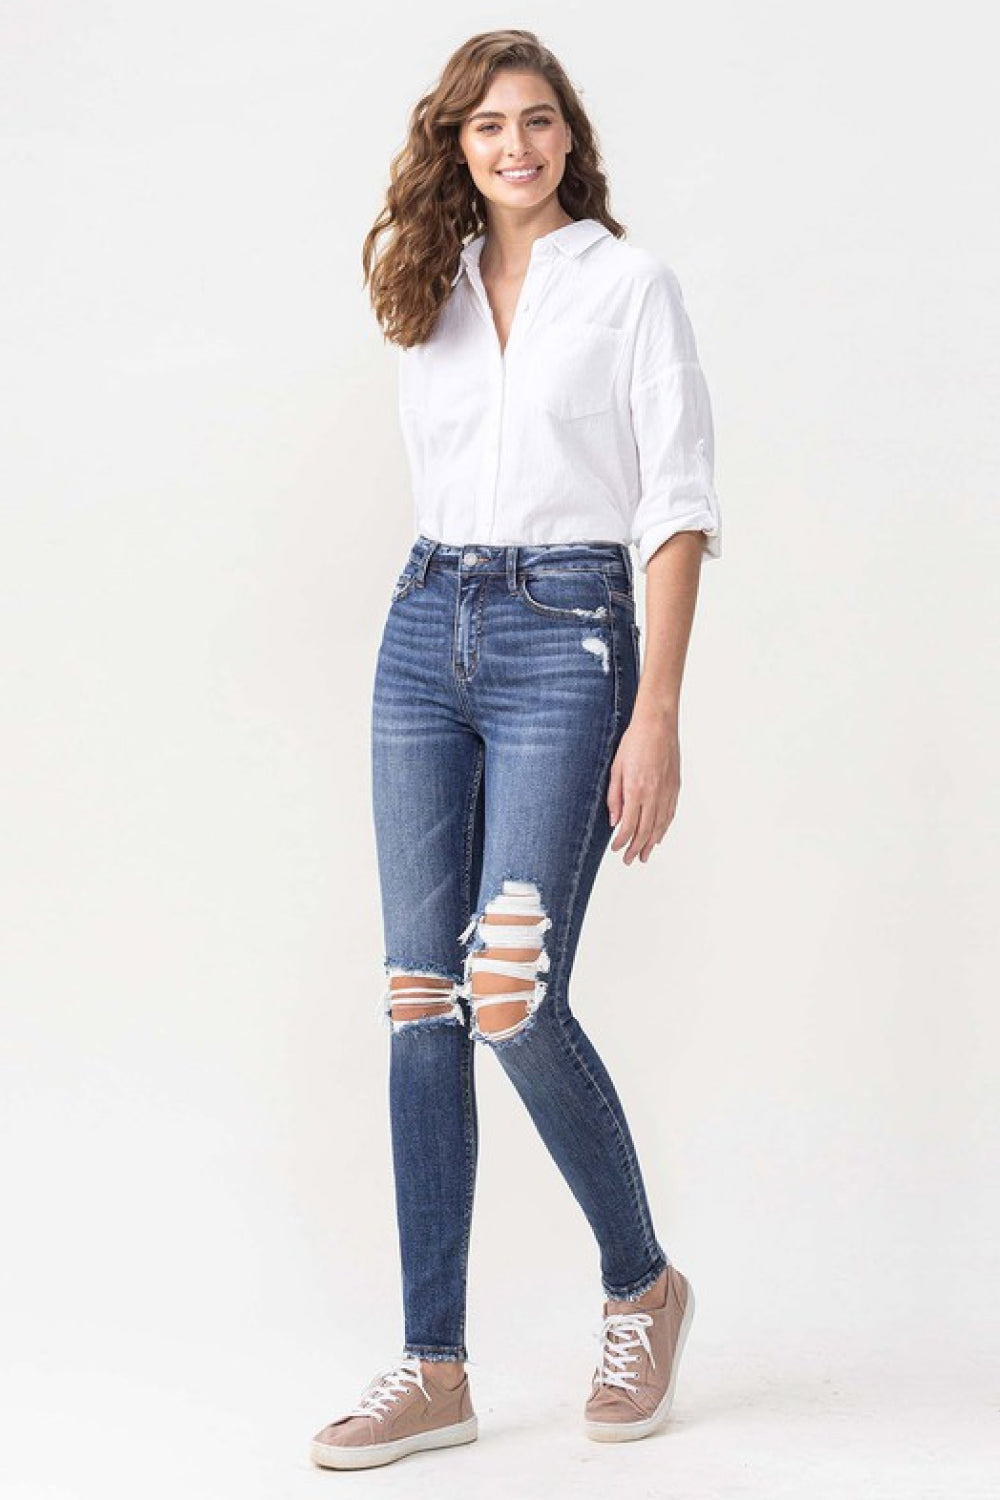 LOVERVET by Vervet Hayden Full Size High Rise Skinny Jeans in Medium Blue